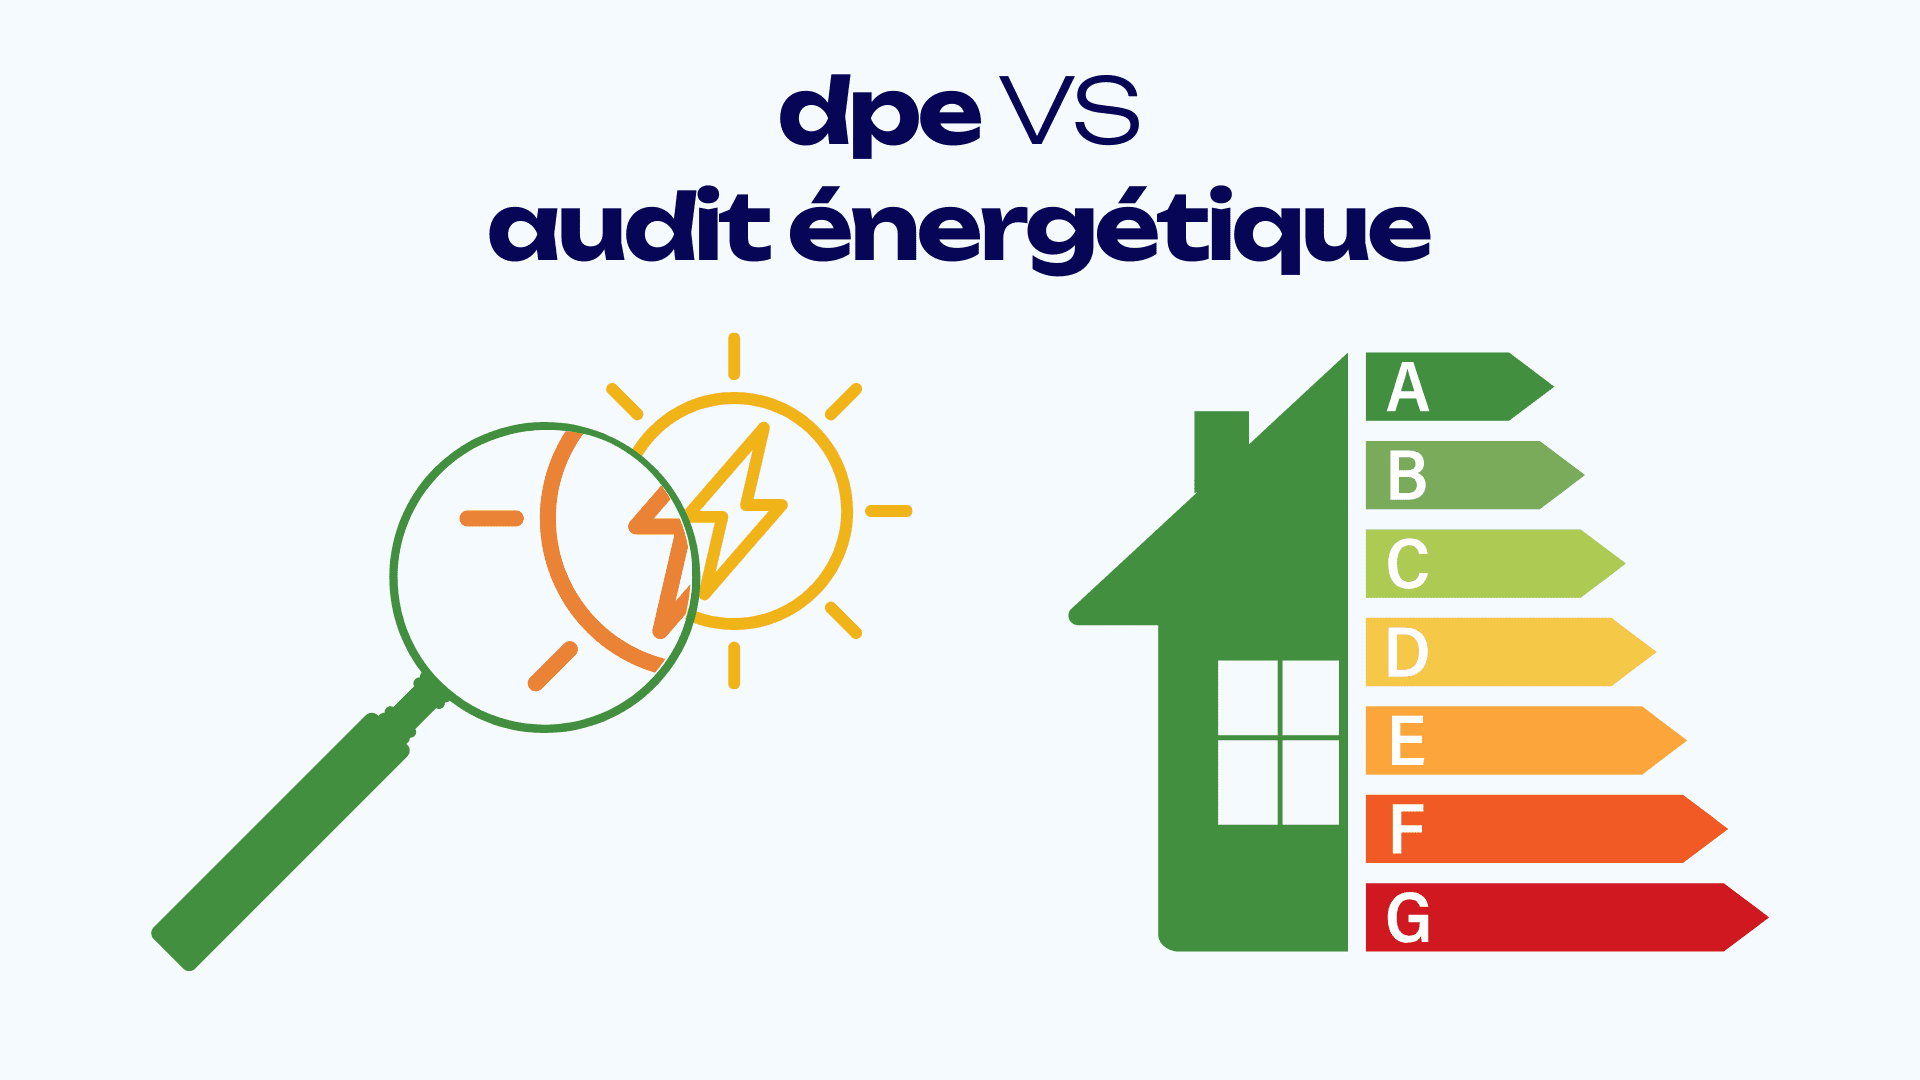 dpe vs audit energetique